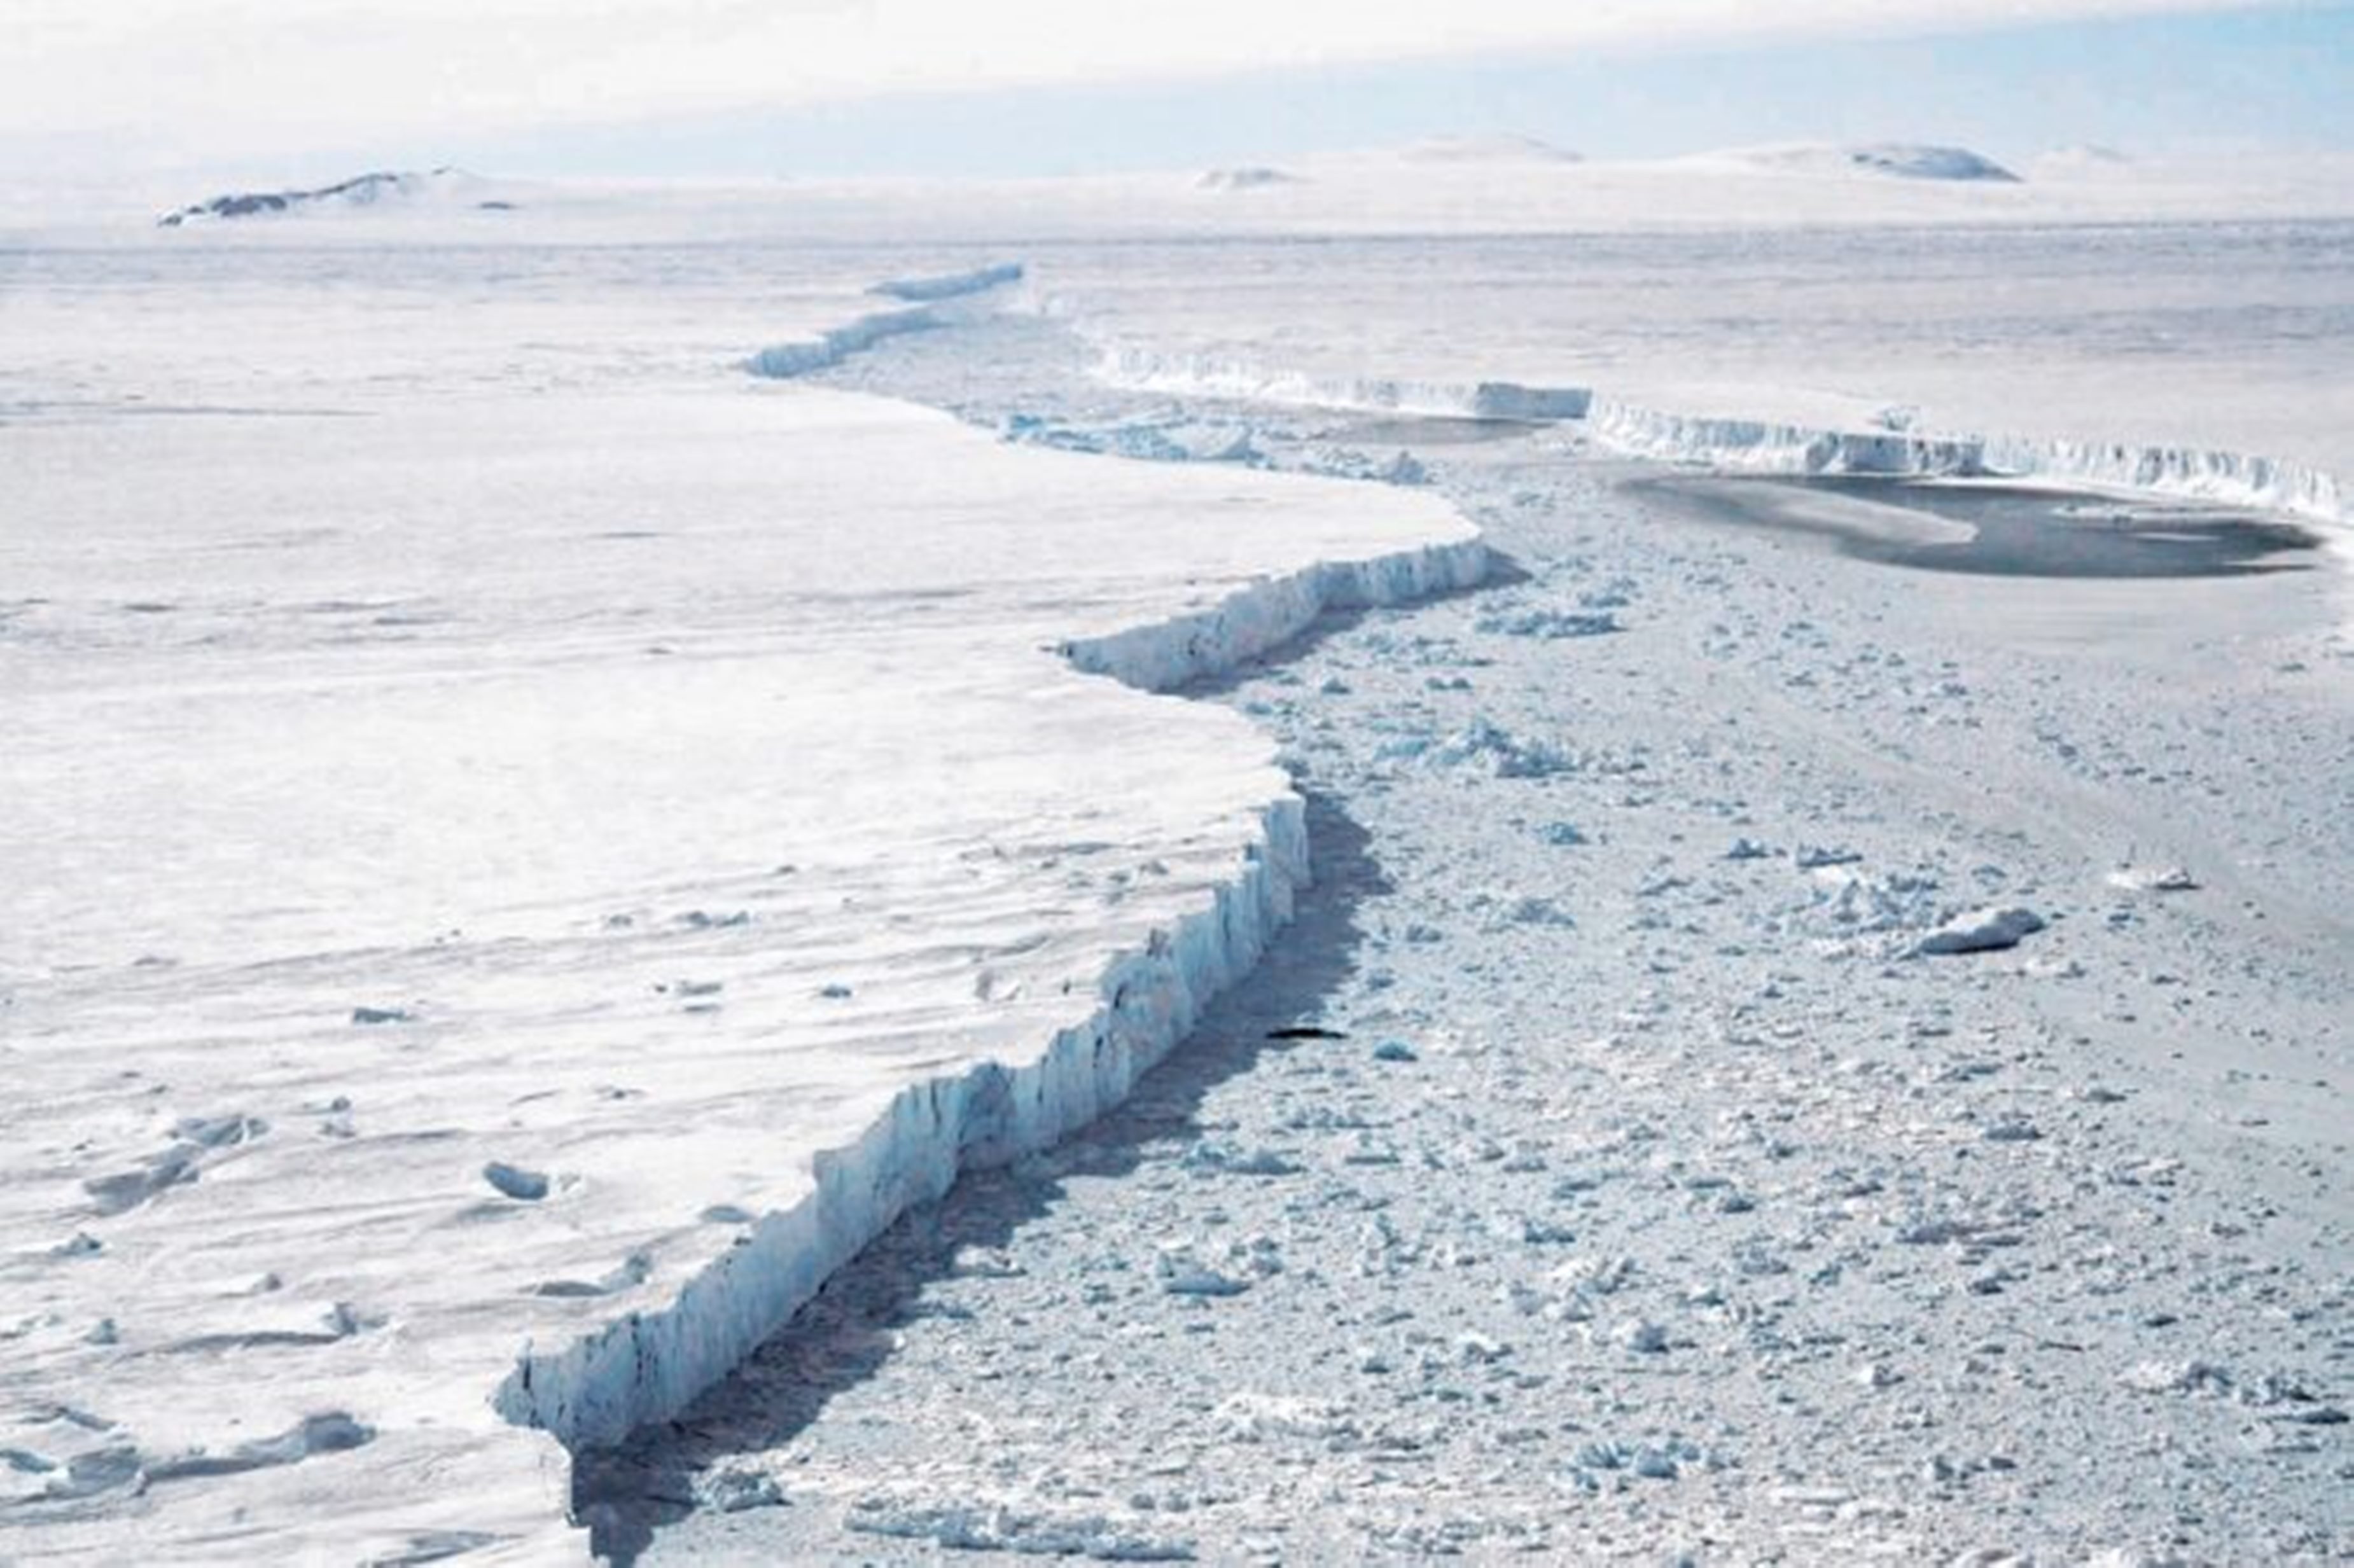  ¡¡¡ALARMA!!!: Un glaciar gigante de la Antártida se derrite ¿qué sucederá?